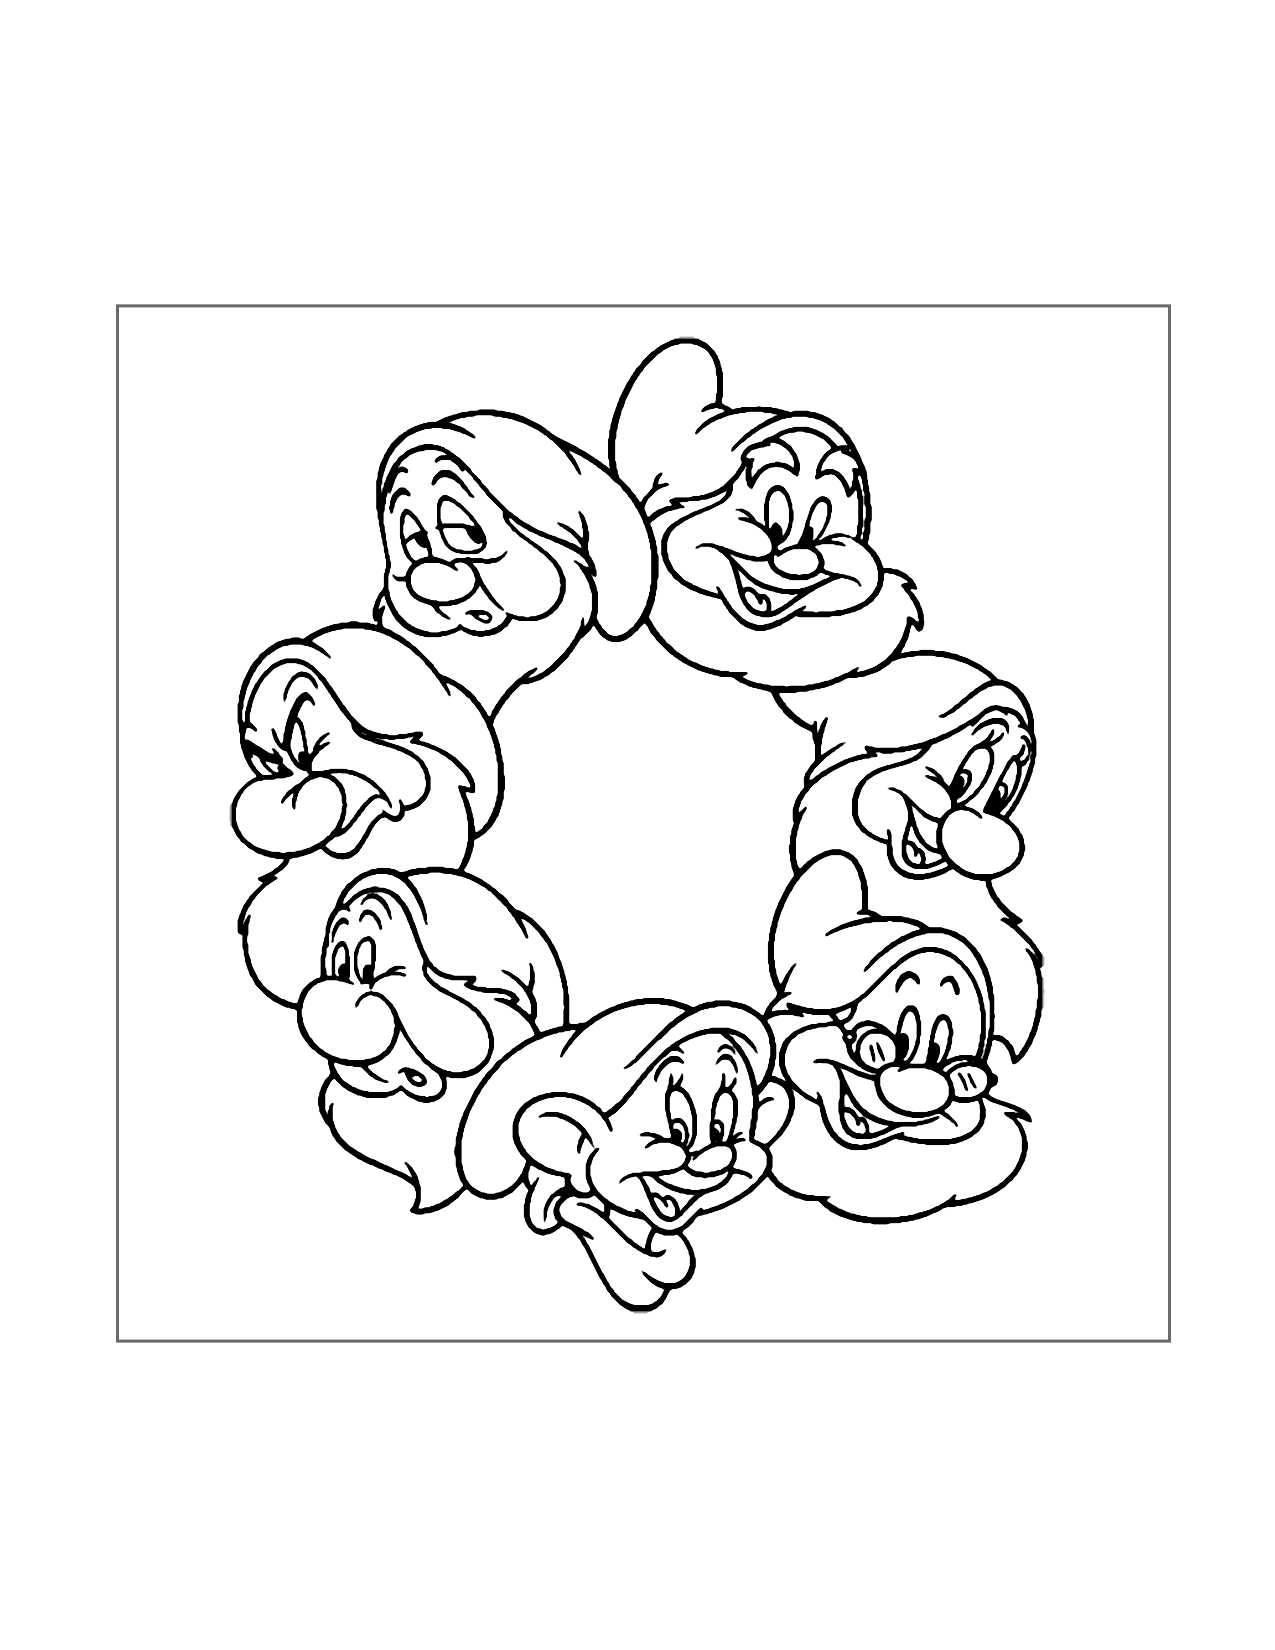 Cute Seven Dwarfs Coloring Page